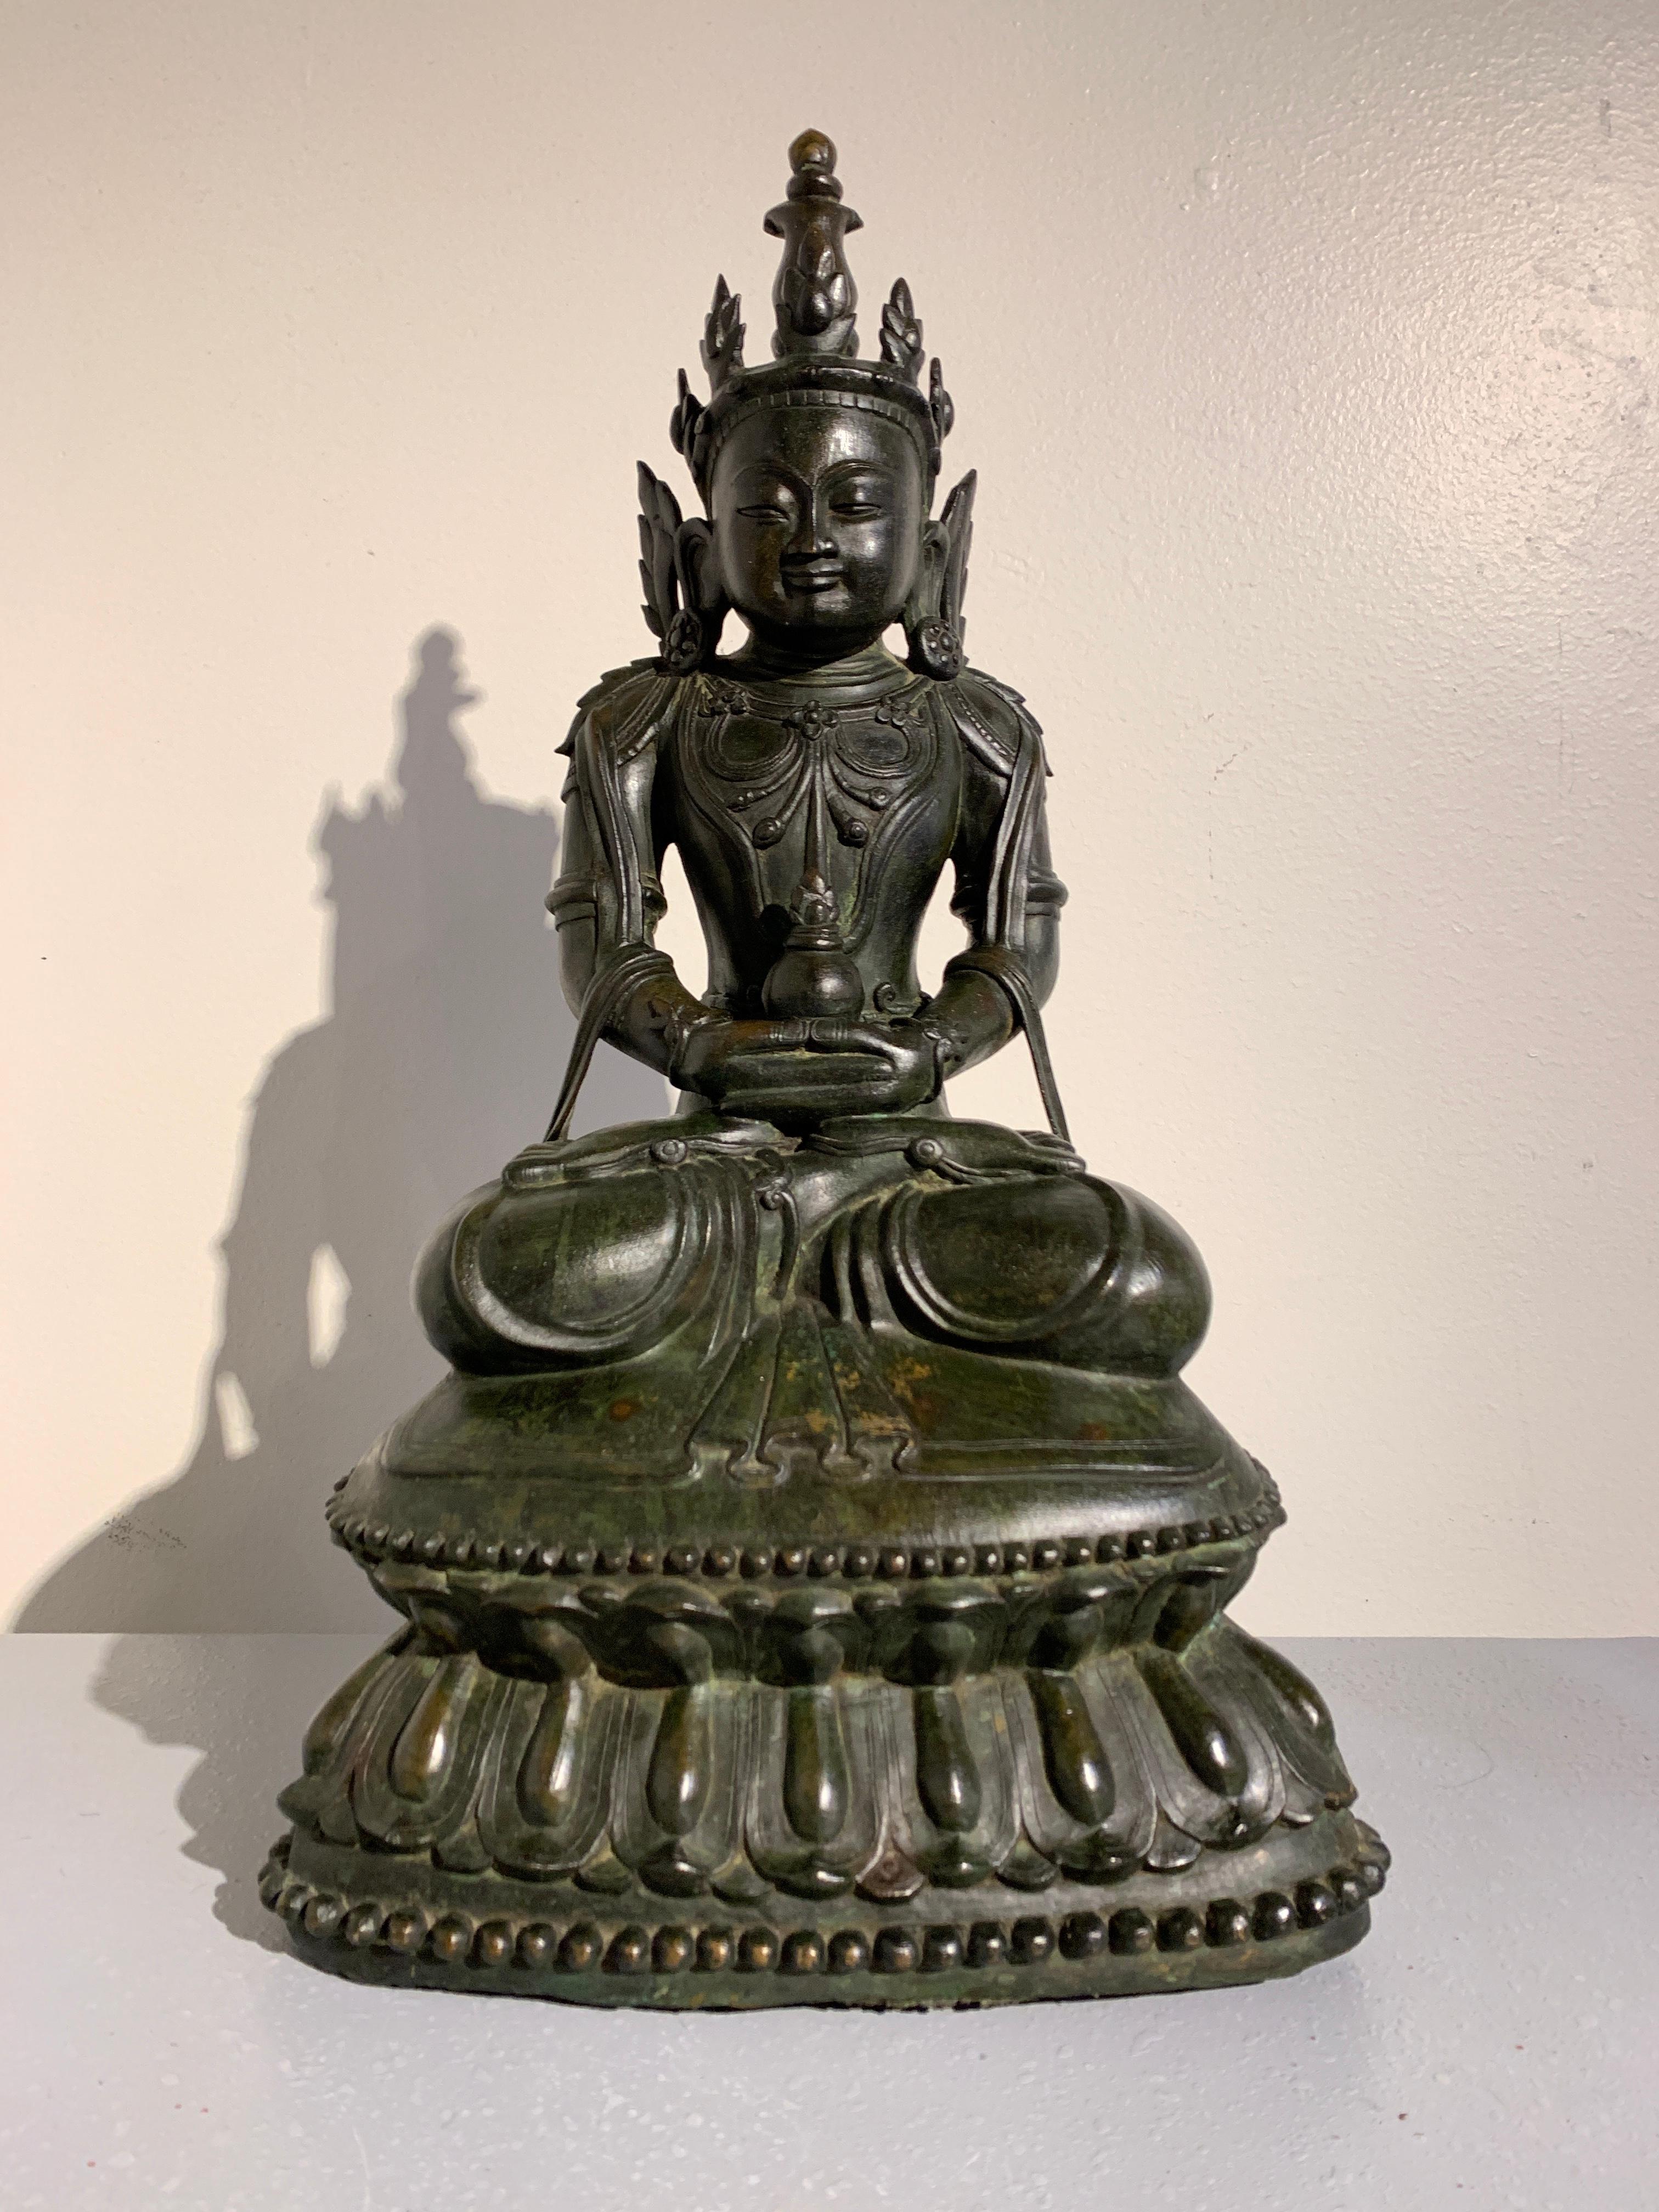 Ein prächtiger und raffinierter, gekrönter und geschmückter sitzender Buddha aus Bronze, Königreich Arakan, Mrauk-U-Periode, 17. 

Der Buddha ist in Vajrasana auf einem hohen doppelten Lotussockel sitzend dargestellt, die Hände in Dhyana Mudra, ein